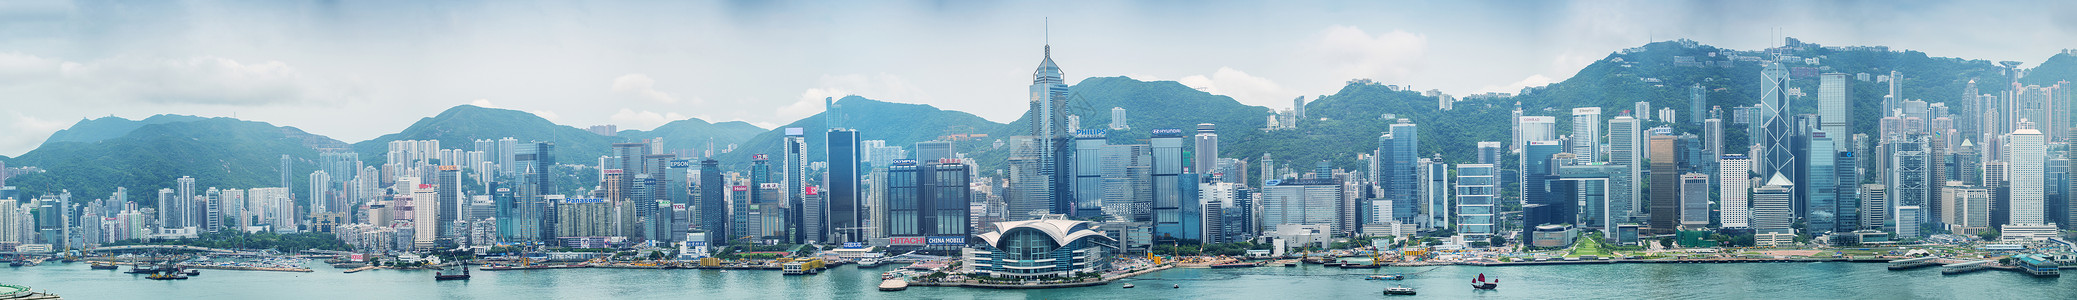 香港2014年5月12日 震撼香港一全景金融中心办公室地标景观港口商业市中心摩天大楼天空背景图片